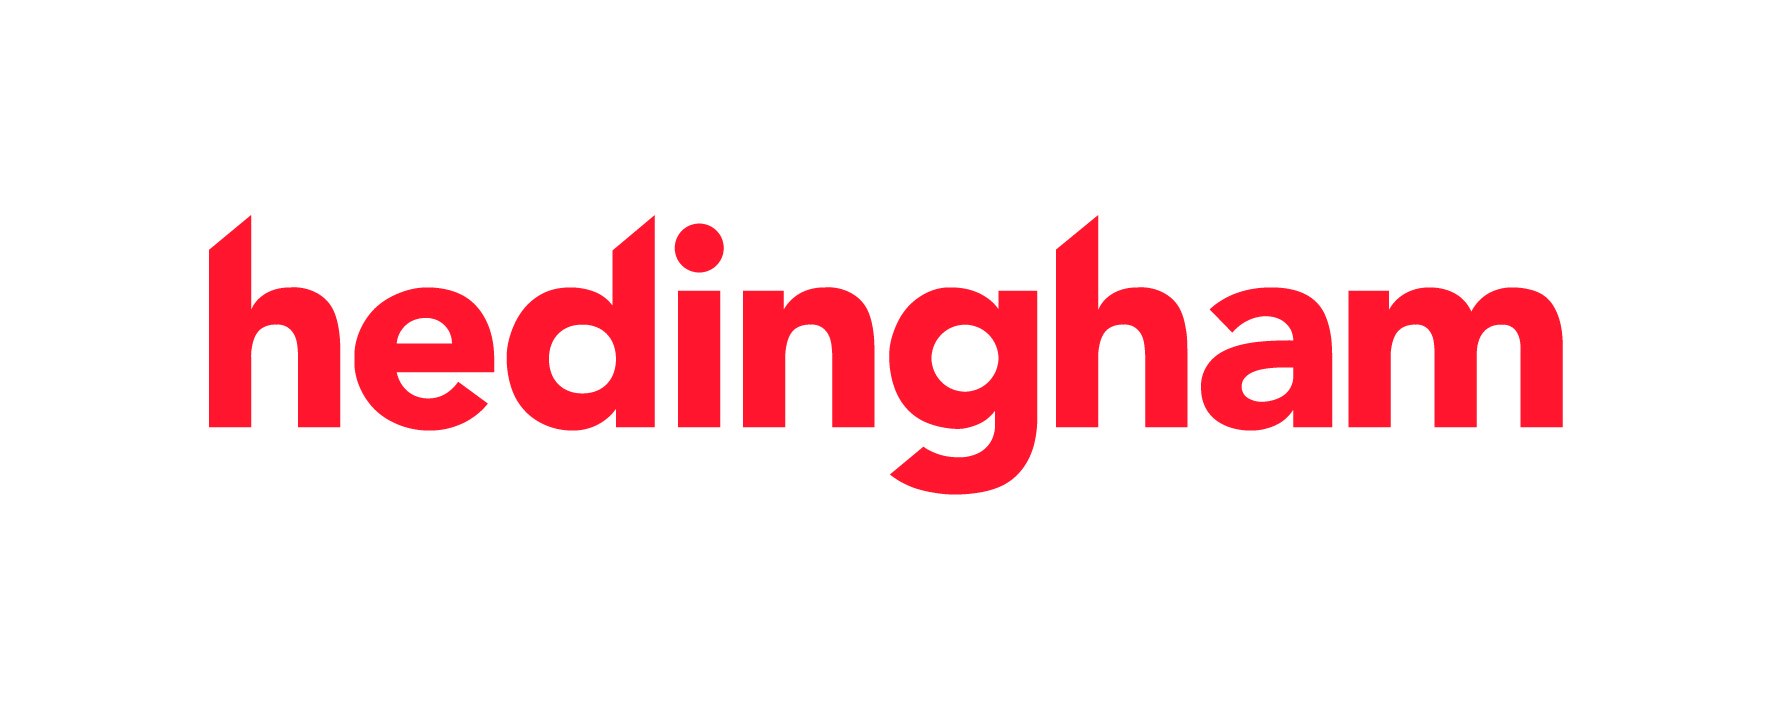 Image of Hedingham Bus logo 